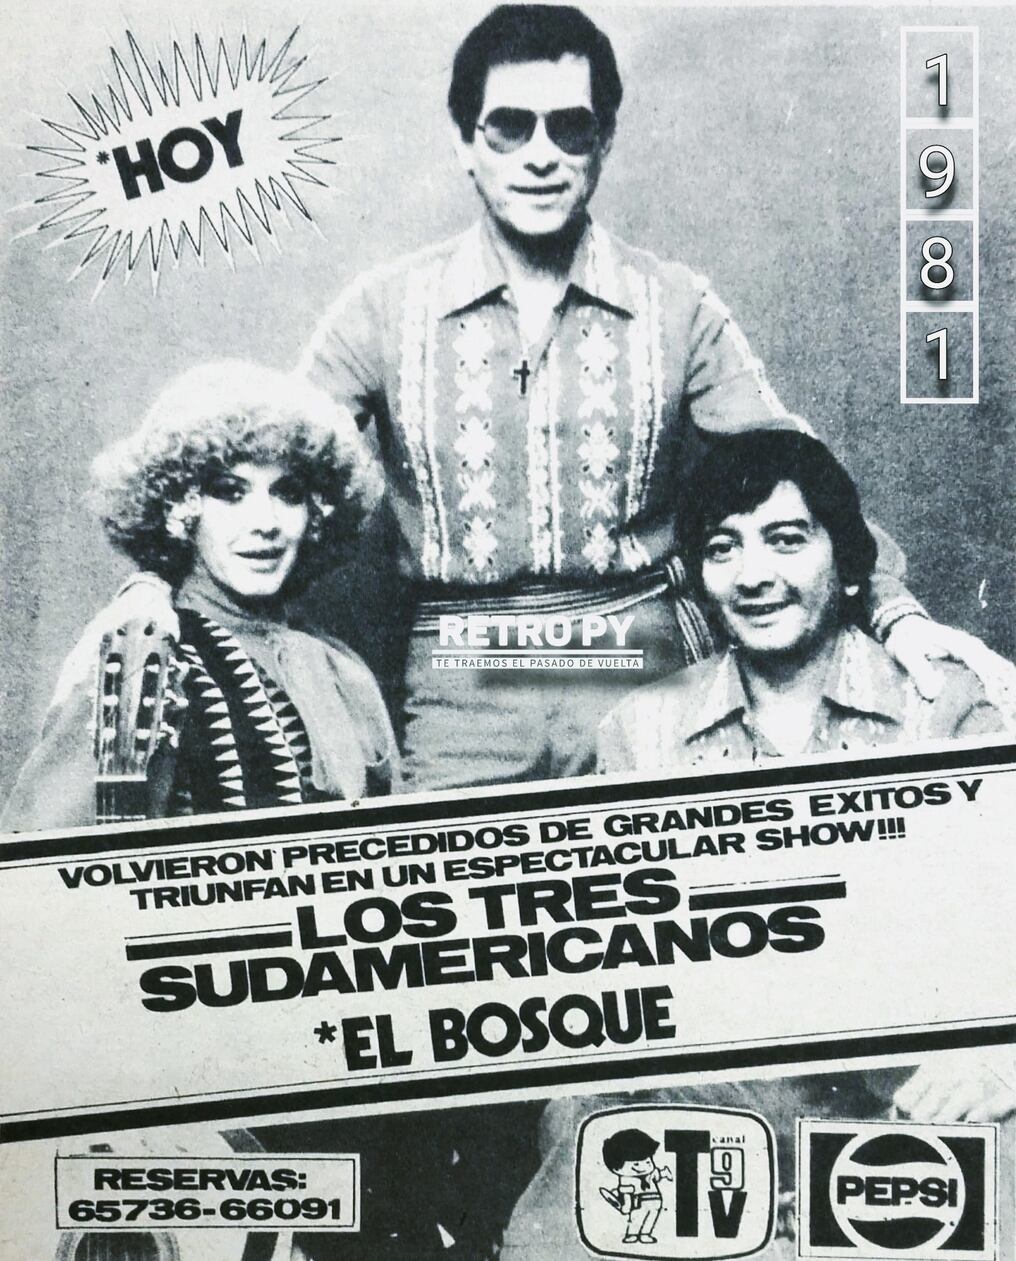 Afiche de una presentación de Los Tres Sudamericanos. Crédito: ReloadedRetropy